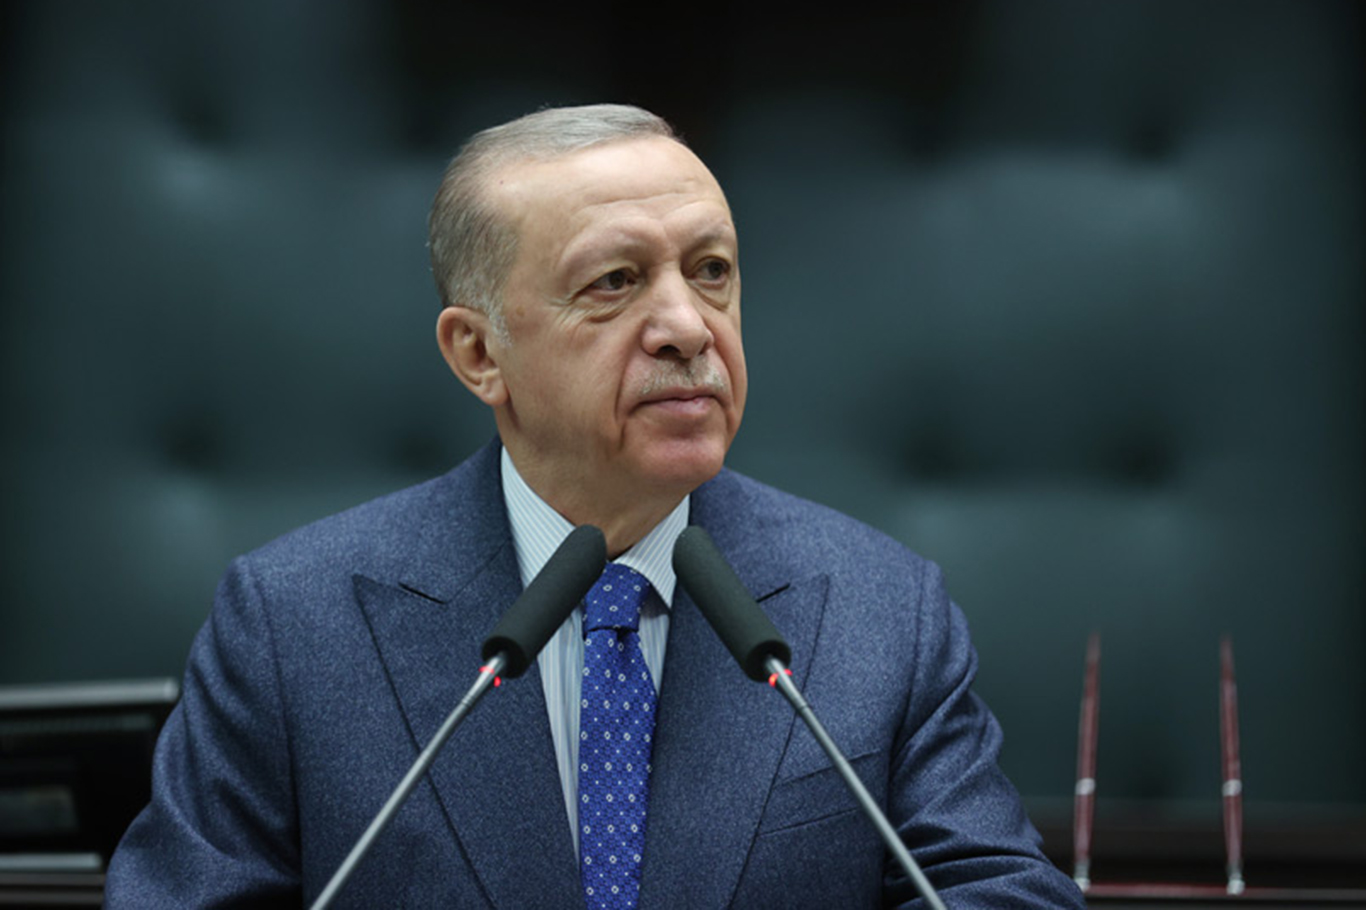 Erdogan vows to build century of Türkiye under any circumstances